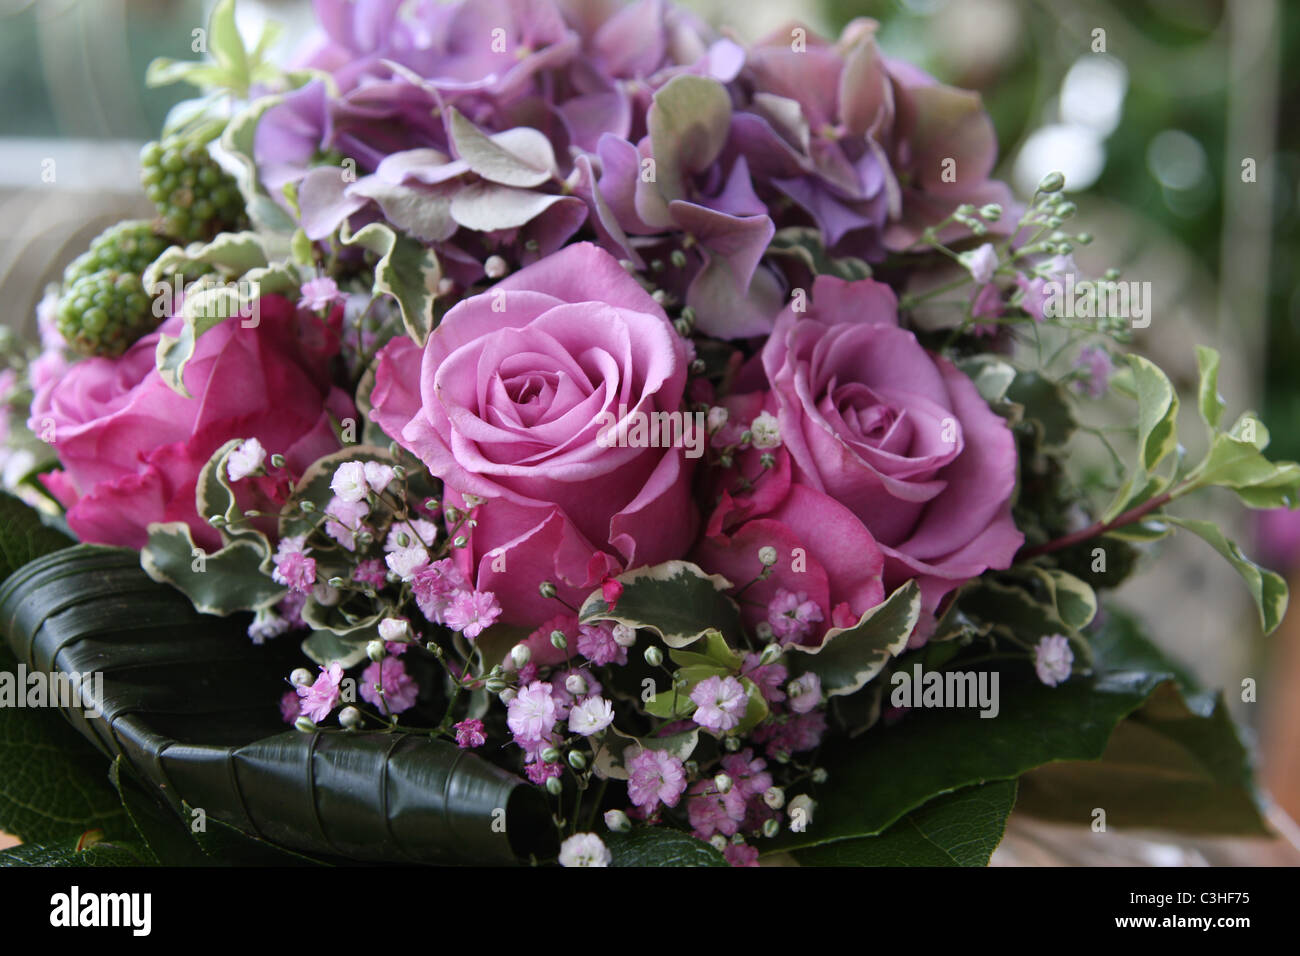 Blumenarrangement, Blumenstrauss, pinkfarbene Rosen, Bouquet with pink roses Stock Photo